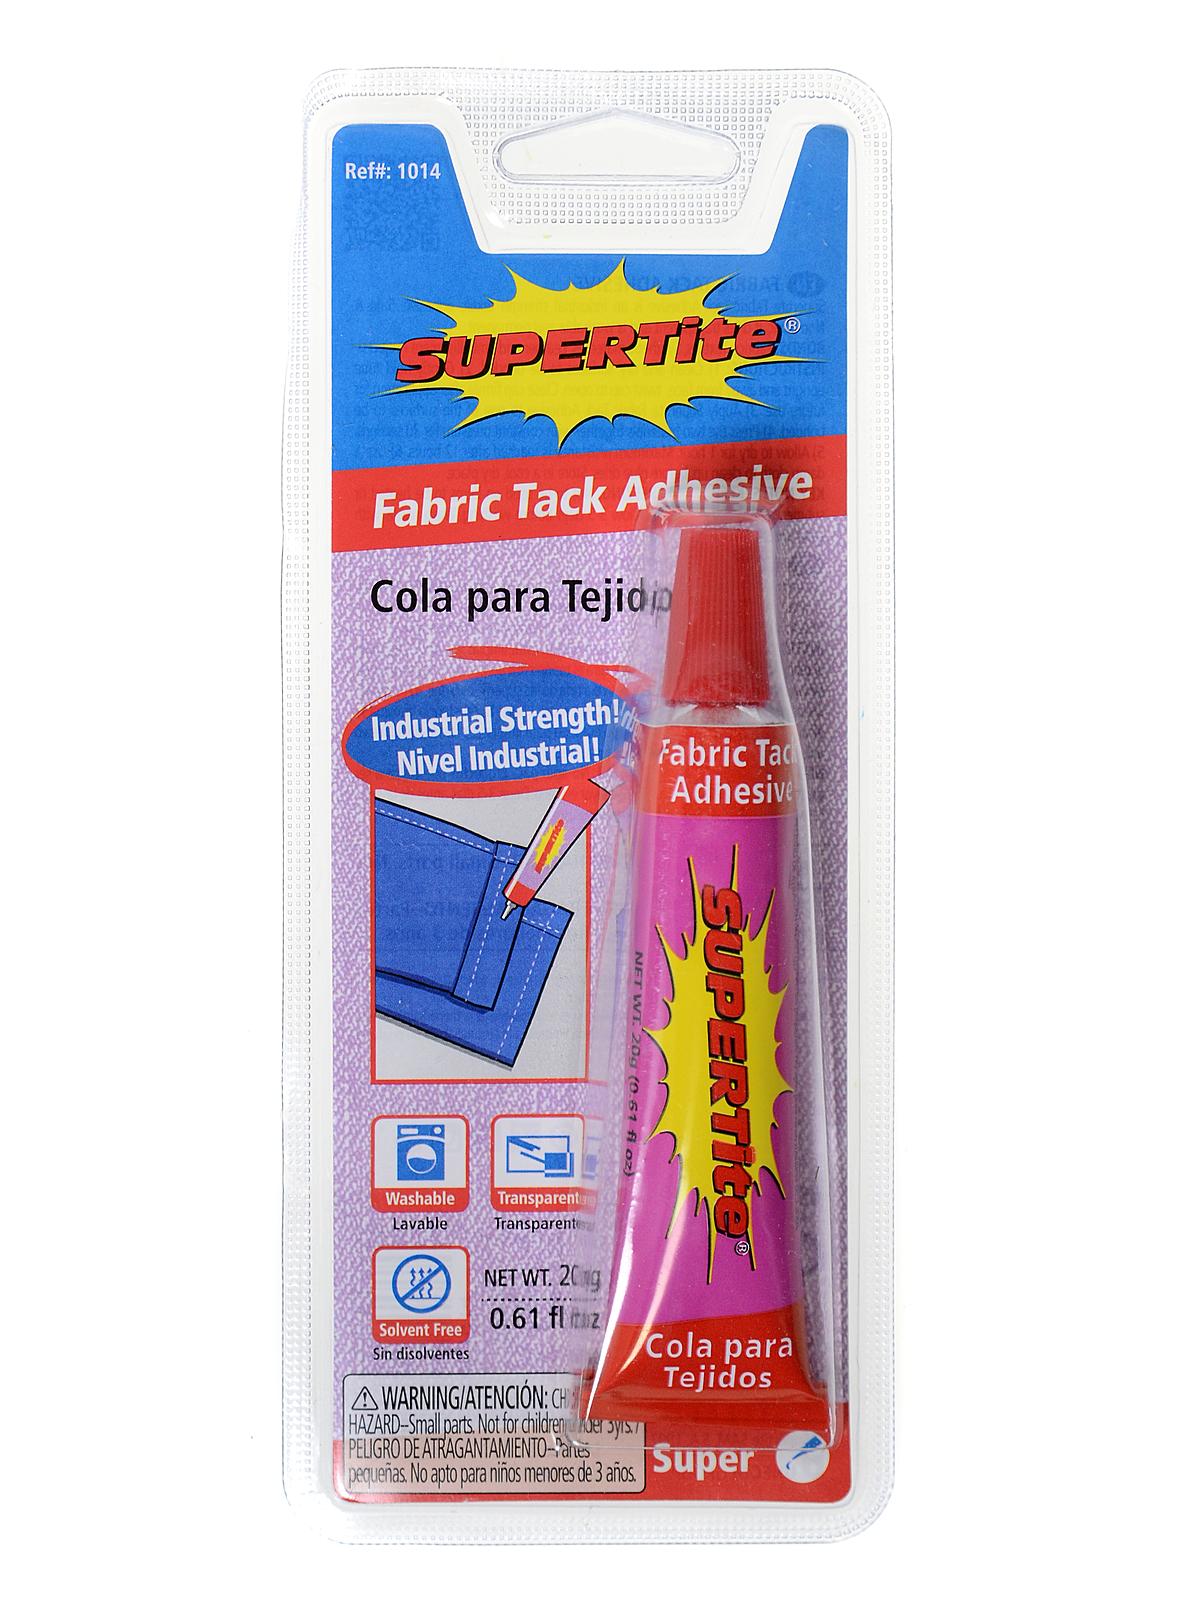 Fabric Tack Adhesive 20 G